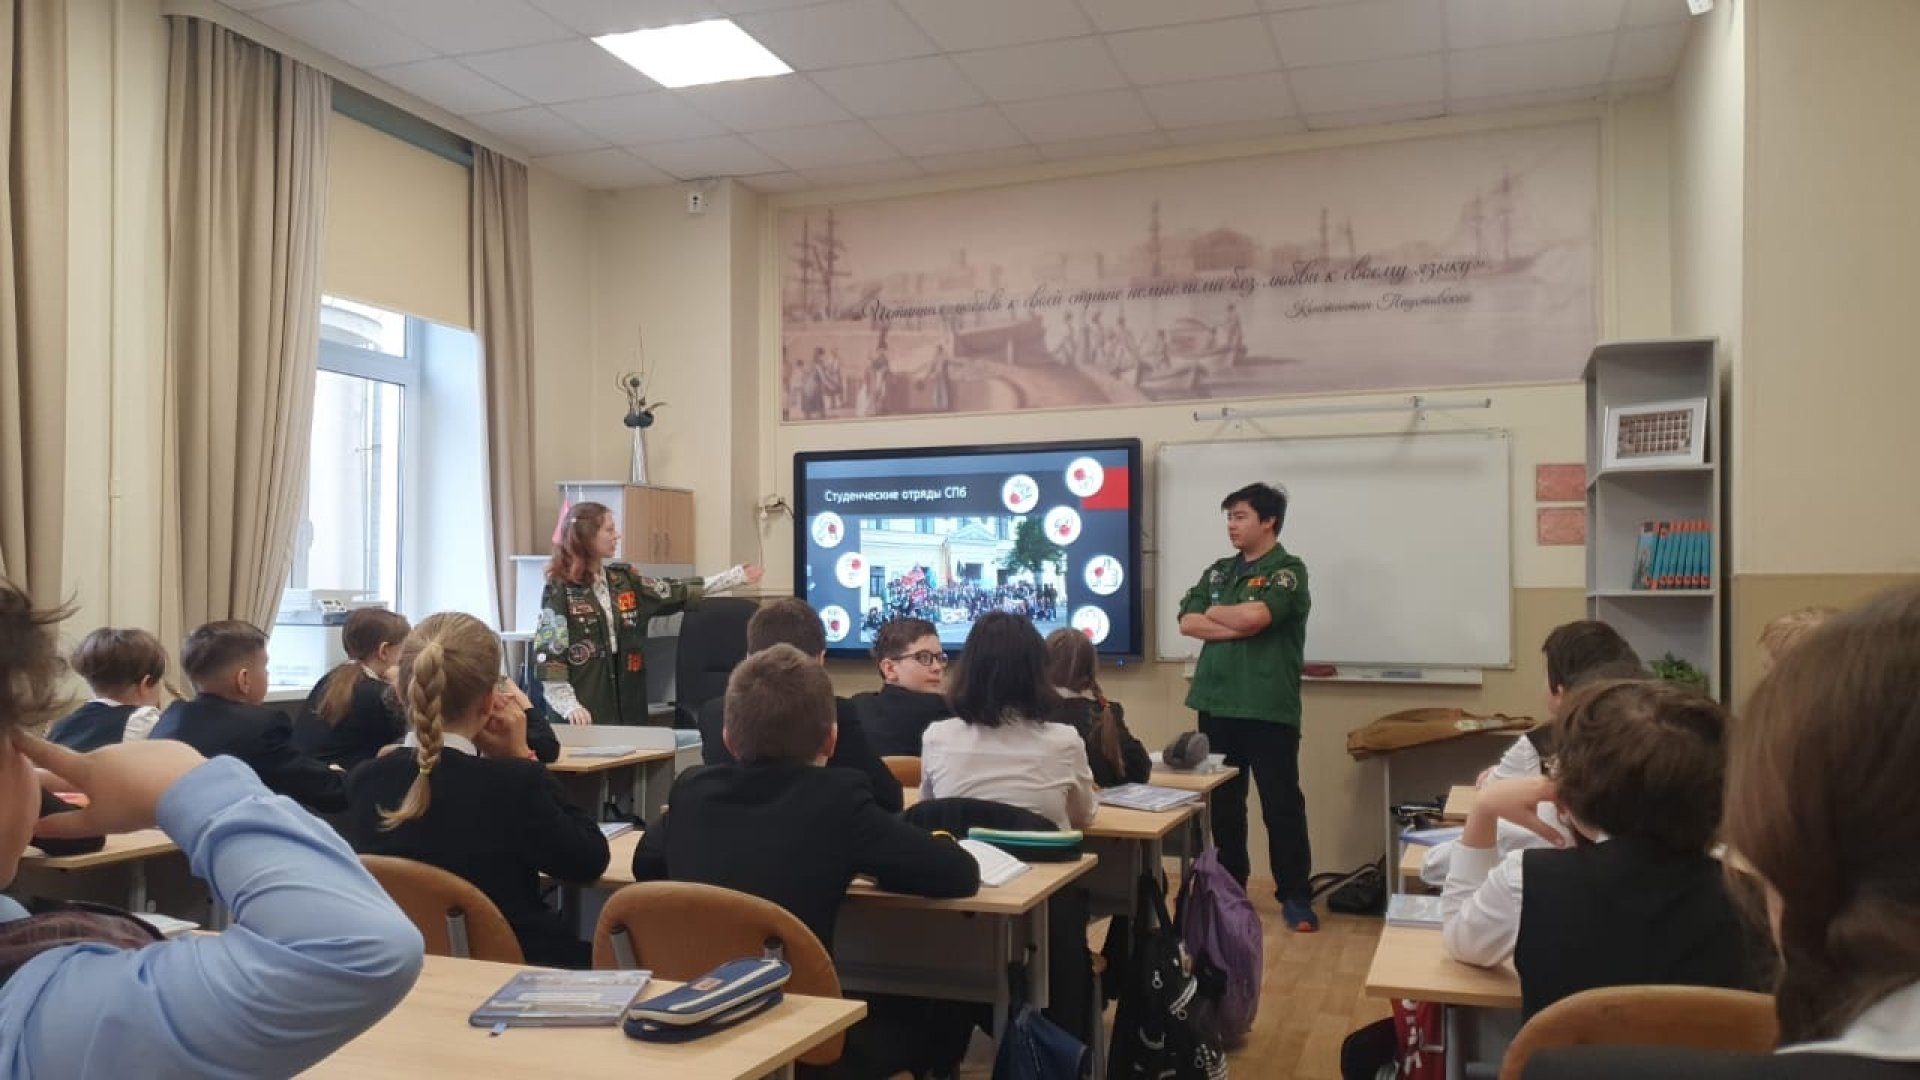 Студенческие отряды Санкт-Петербурга провели урок труда в рамках занятия «Разговоры о важном»